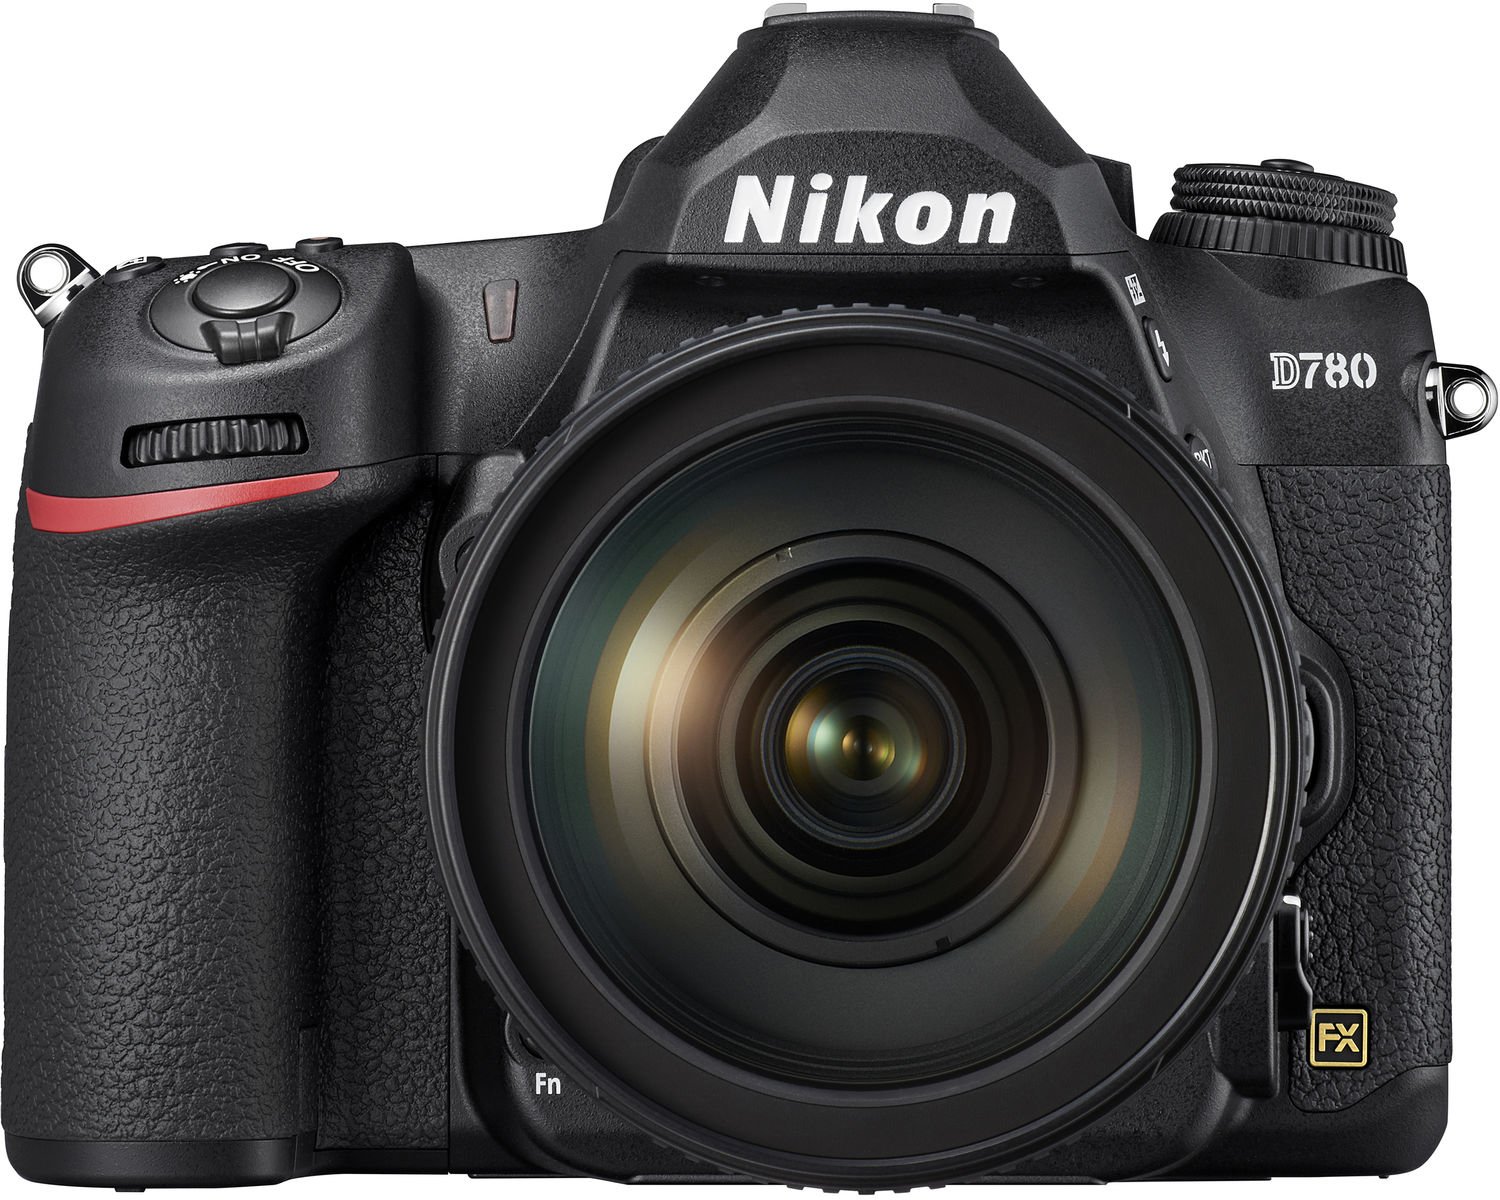 Nikon D780 DSLR Camera with AF-S 24-120mm F4G ED VR Lens - Black